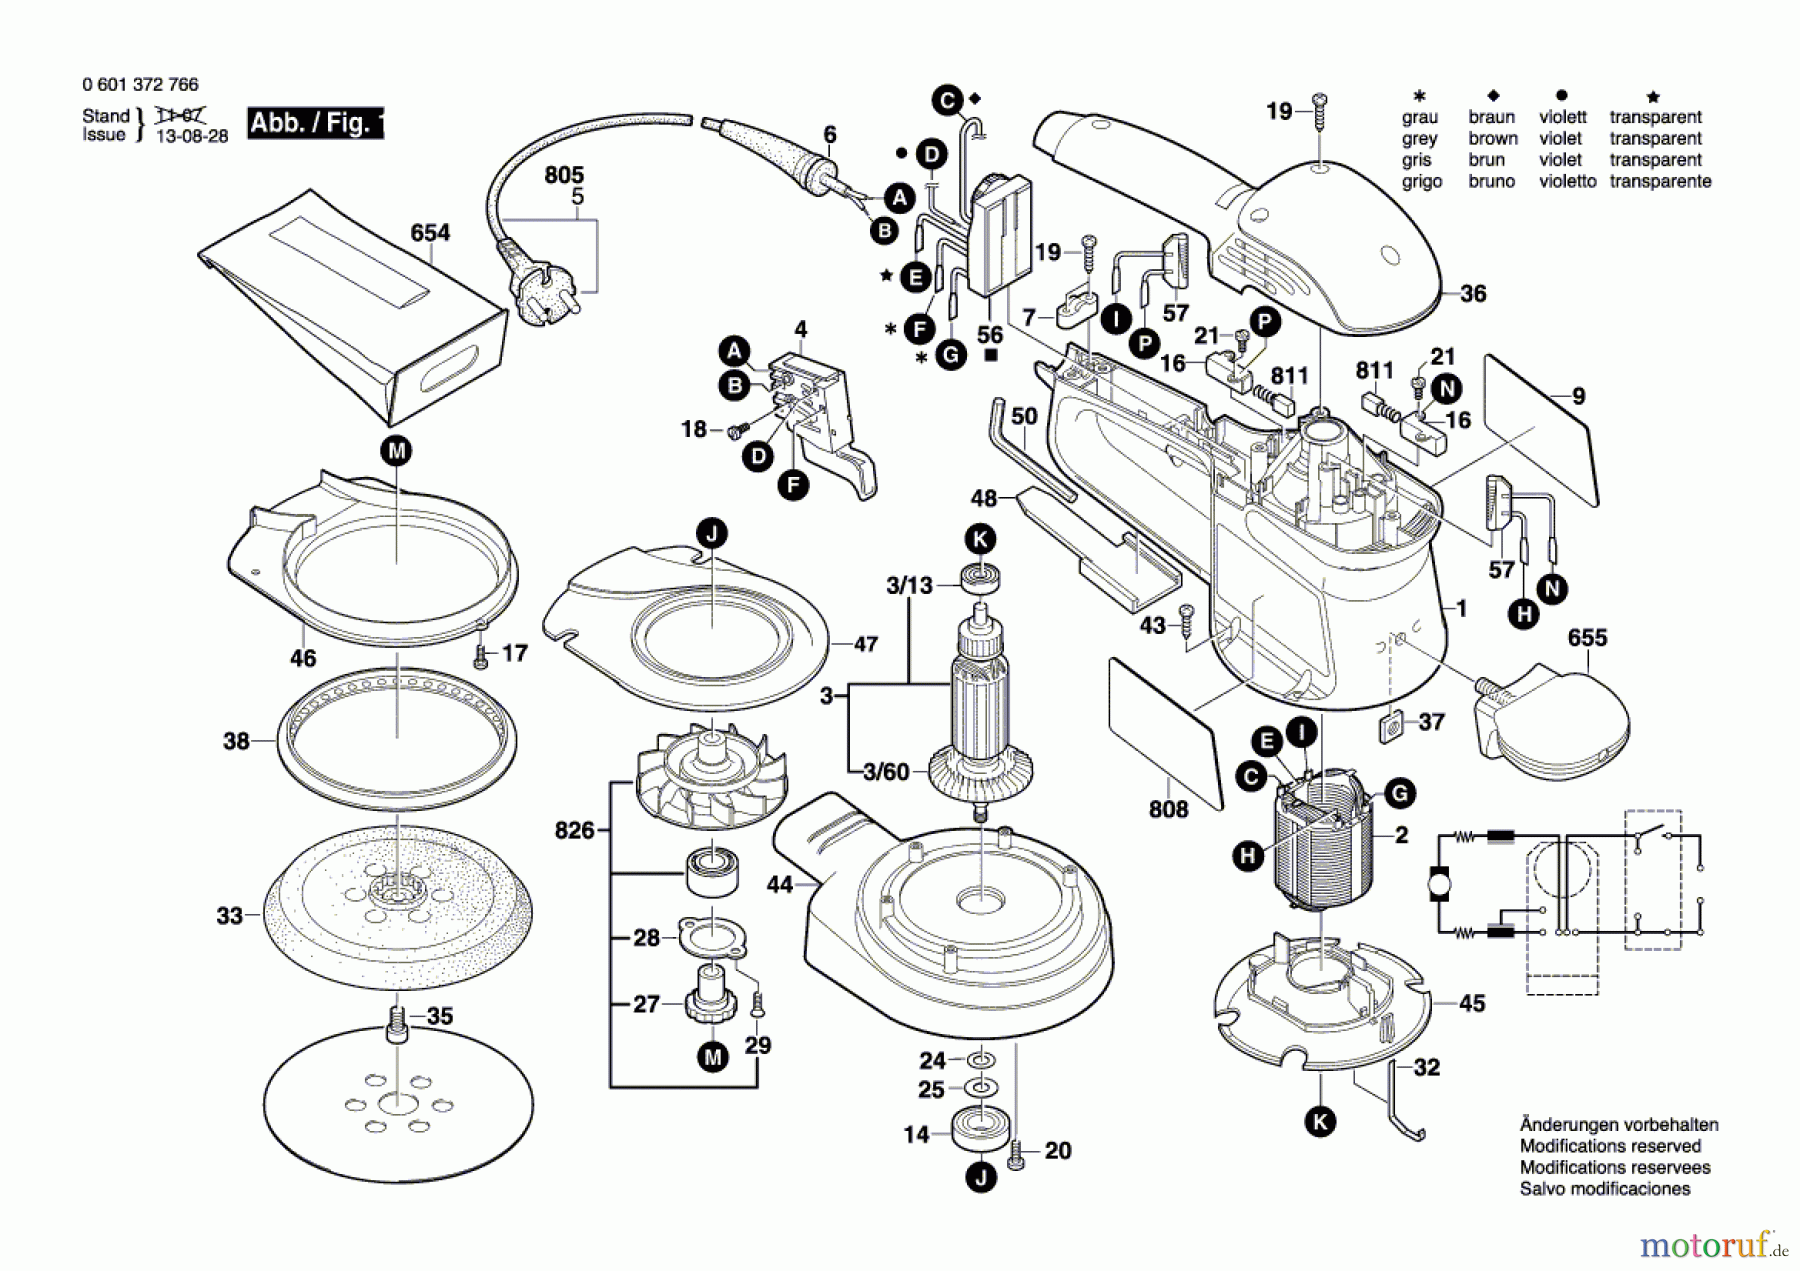  Bosch Werkzeug Exzenterschleifer EX 150 AC Seite 1